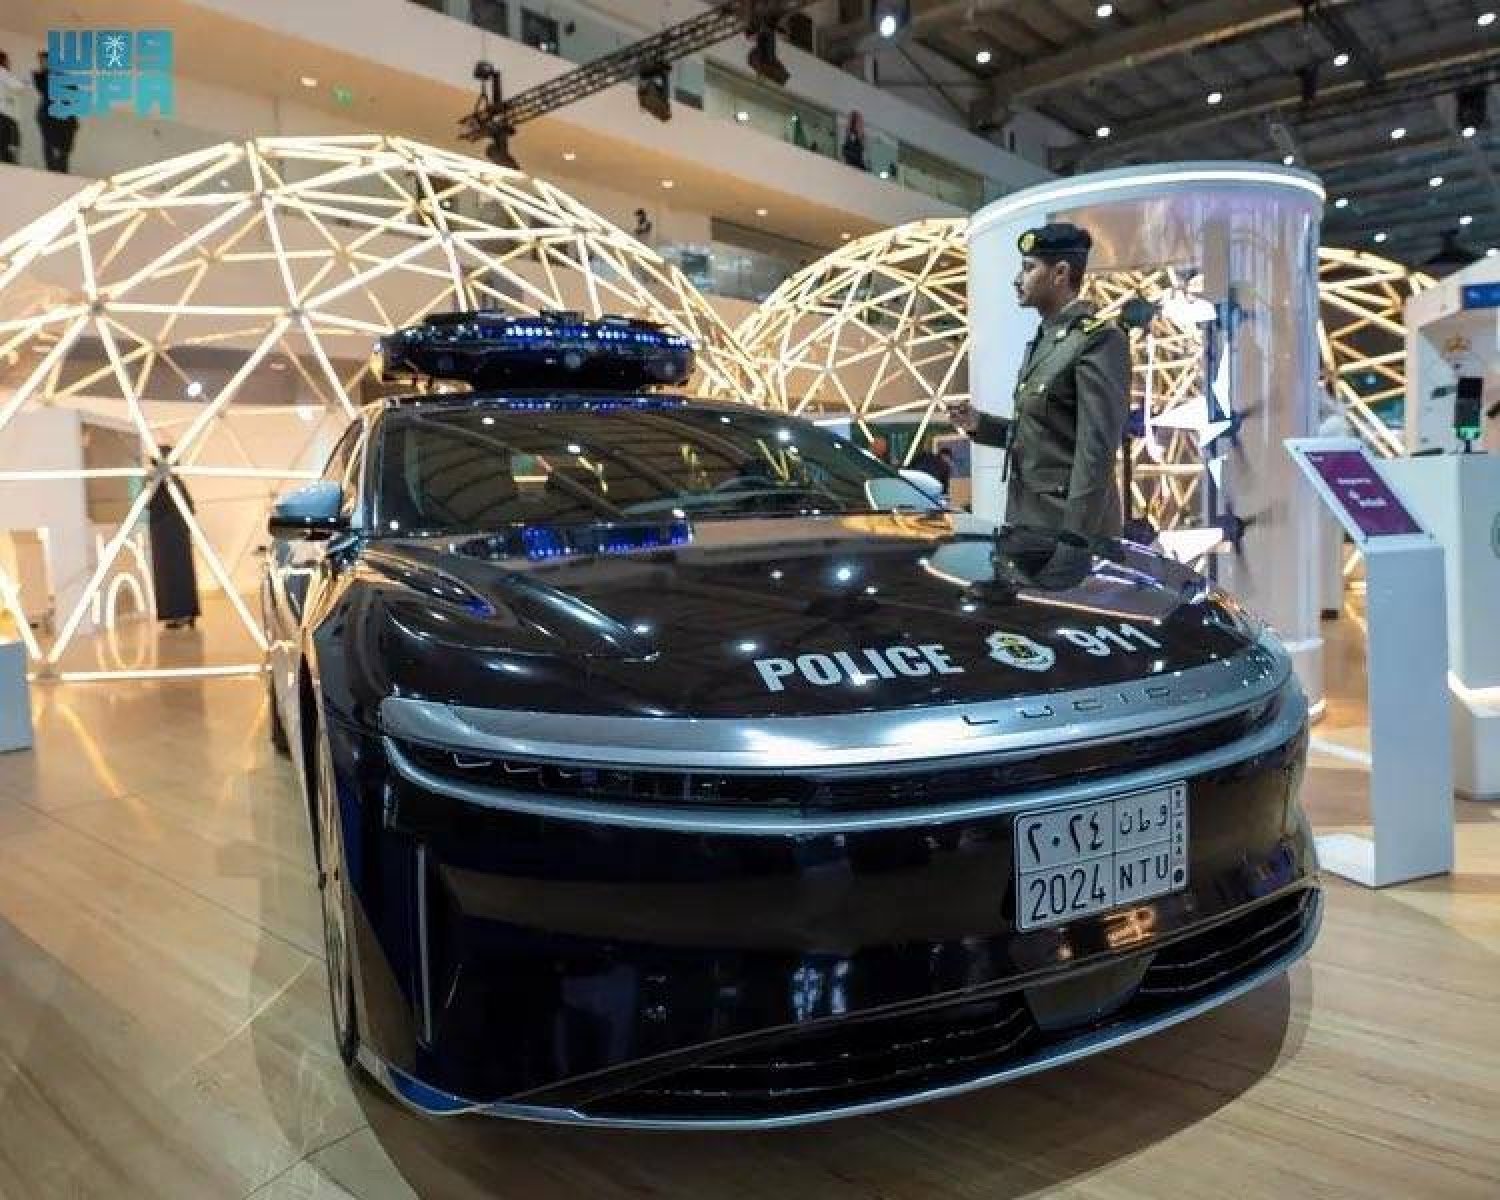 سيارة كهربائية أمنية من صنع «لوسيد» في السعودية مزودة بذكاء اصطناعي لرصد المخالفات وتحليل السلوك (واس)